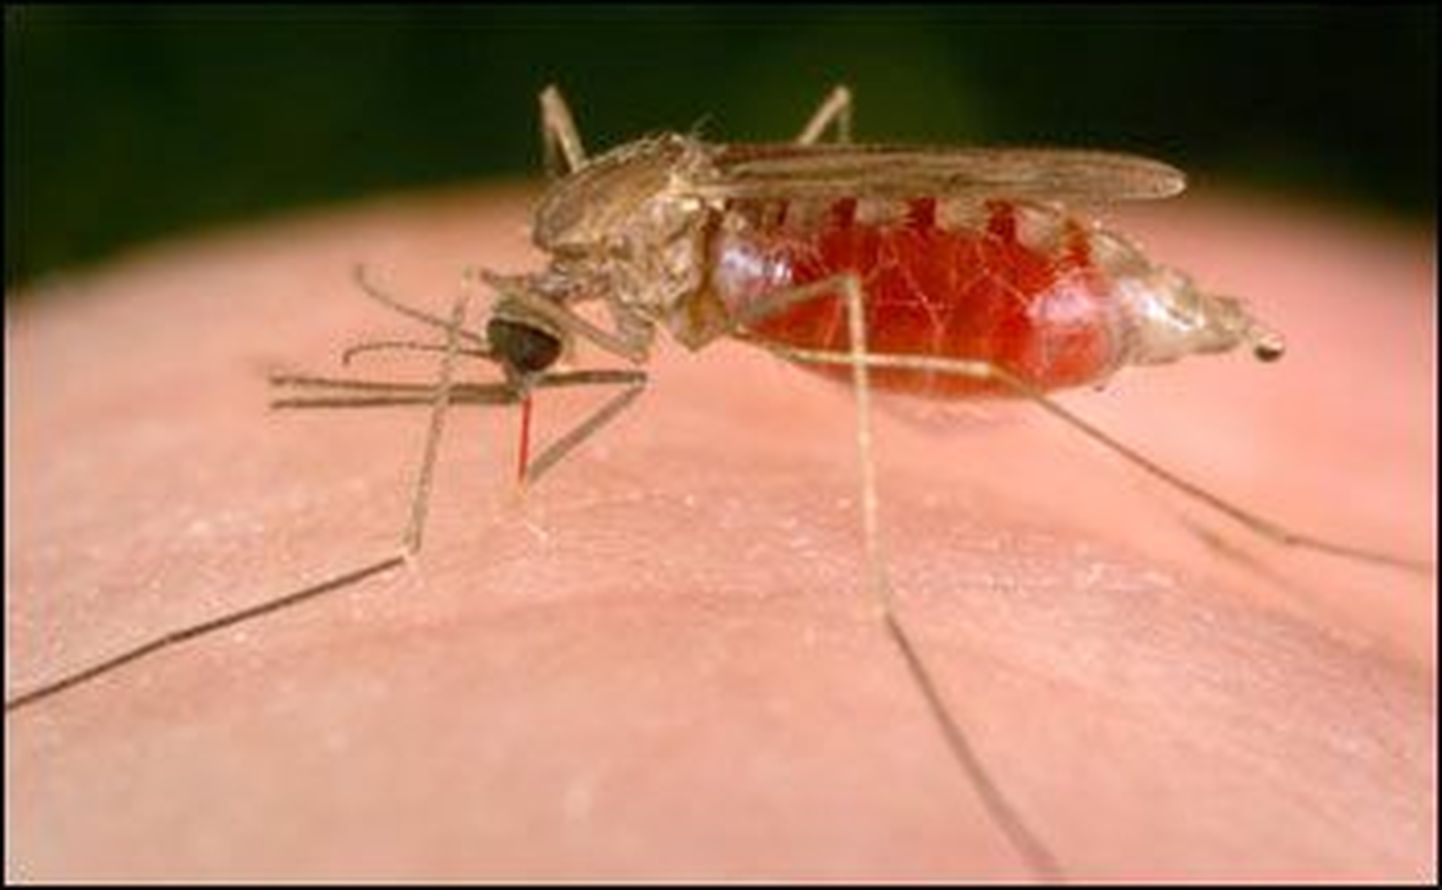 Malaariasääsk